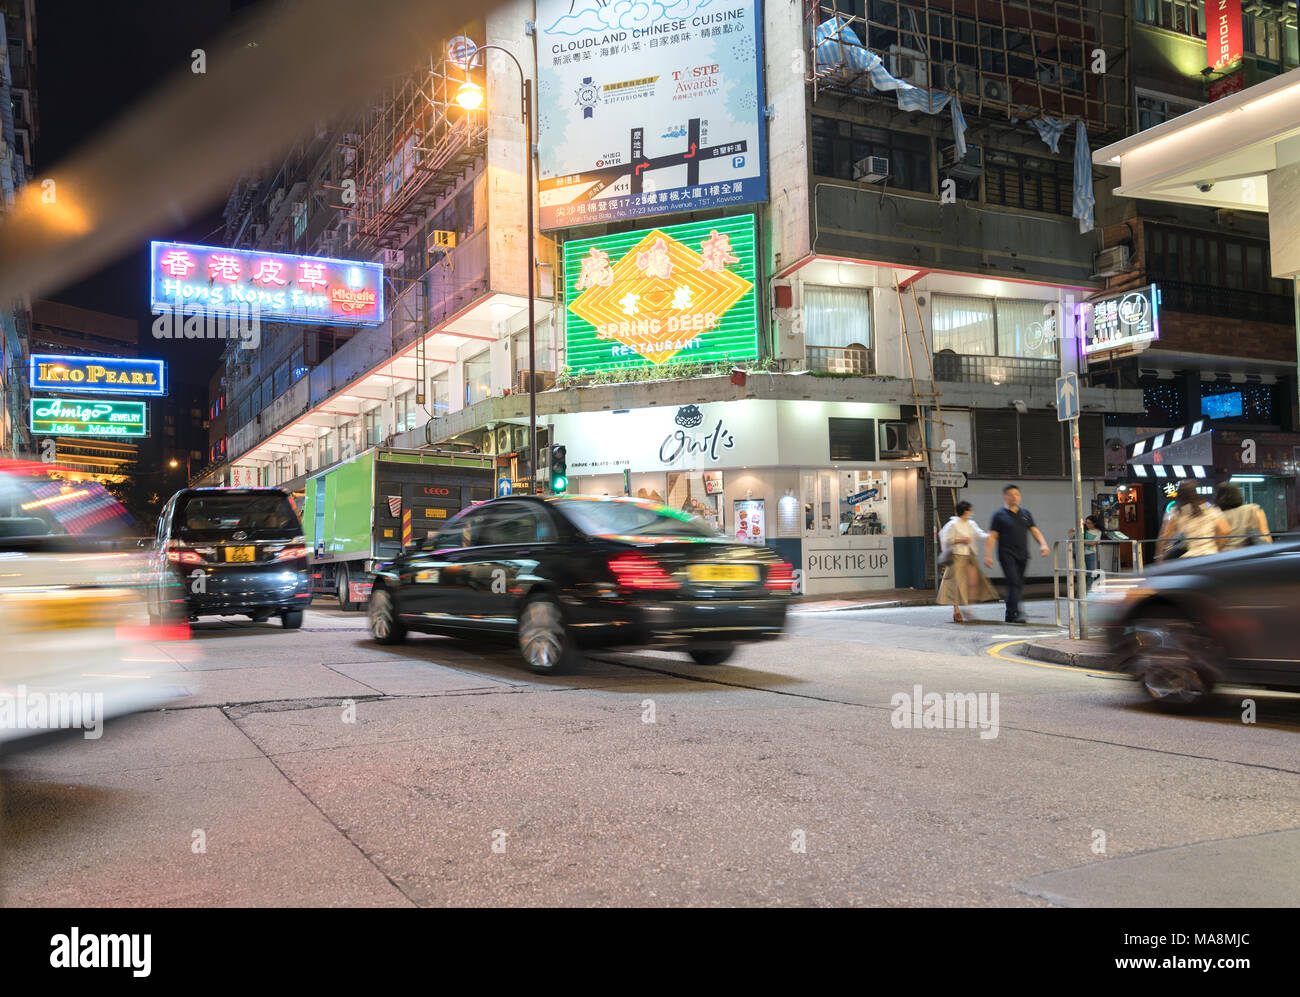 KOWLOON, HONG KONG - 18 settembre 2017; luminose insegne al neon dominano in esposizione lunga scena notturna tipicamente Asian downtown city corner street pe sfocata Foto Stock